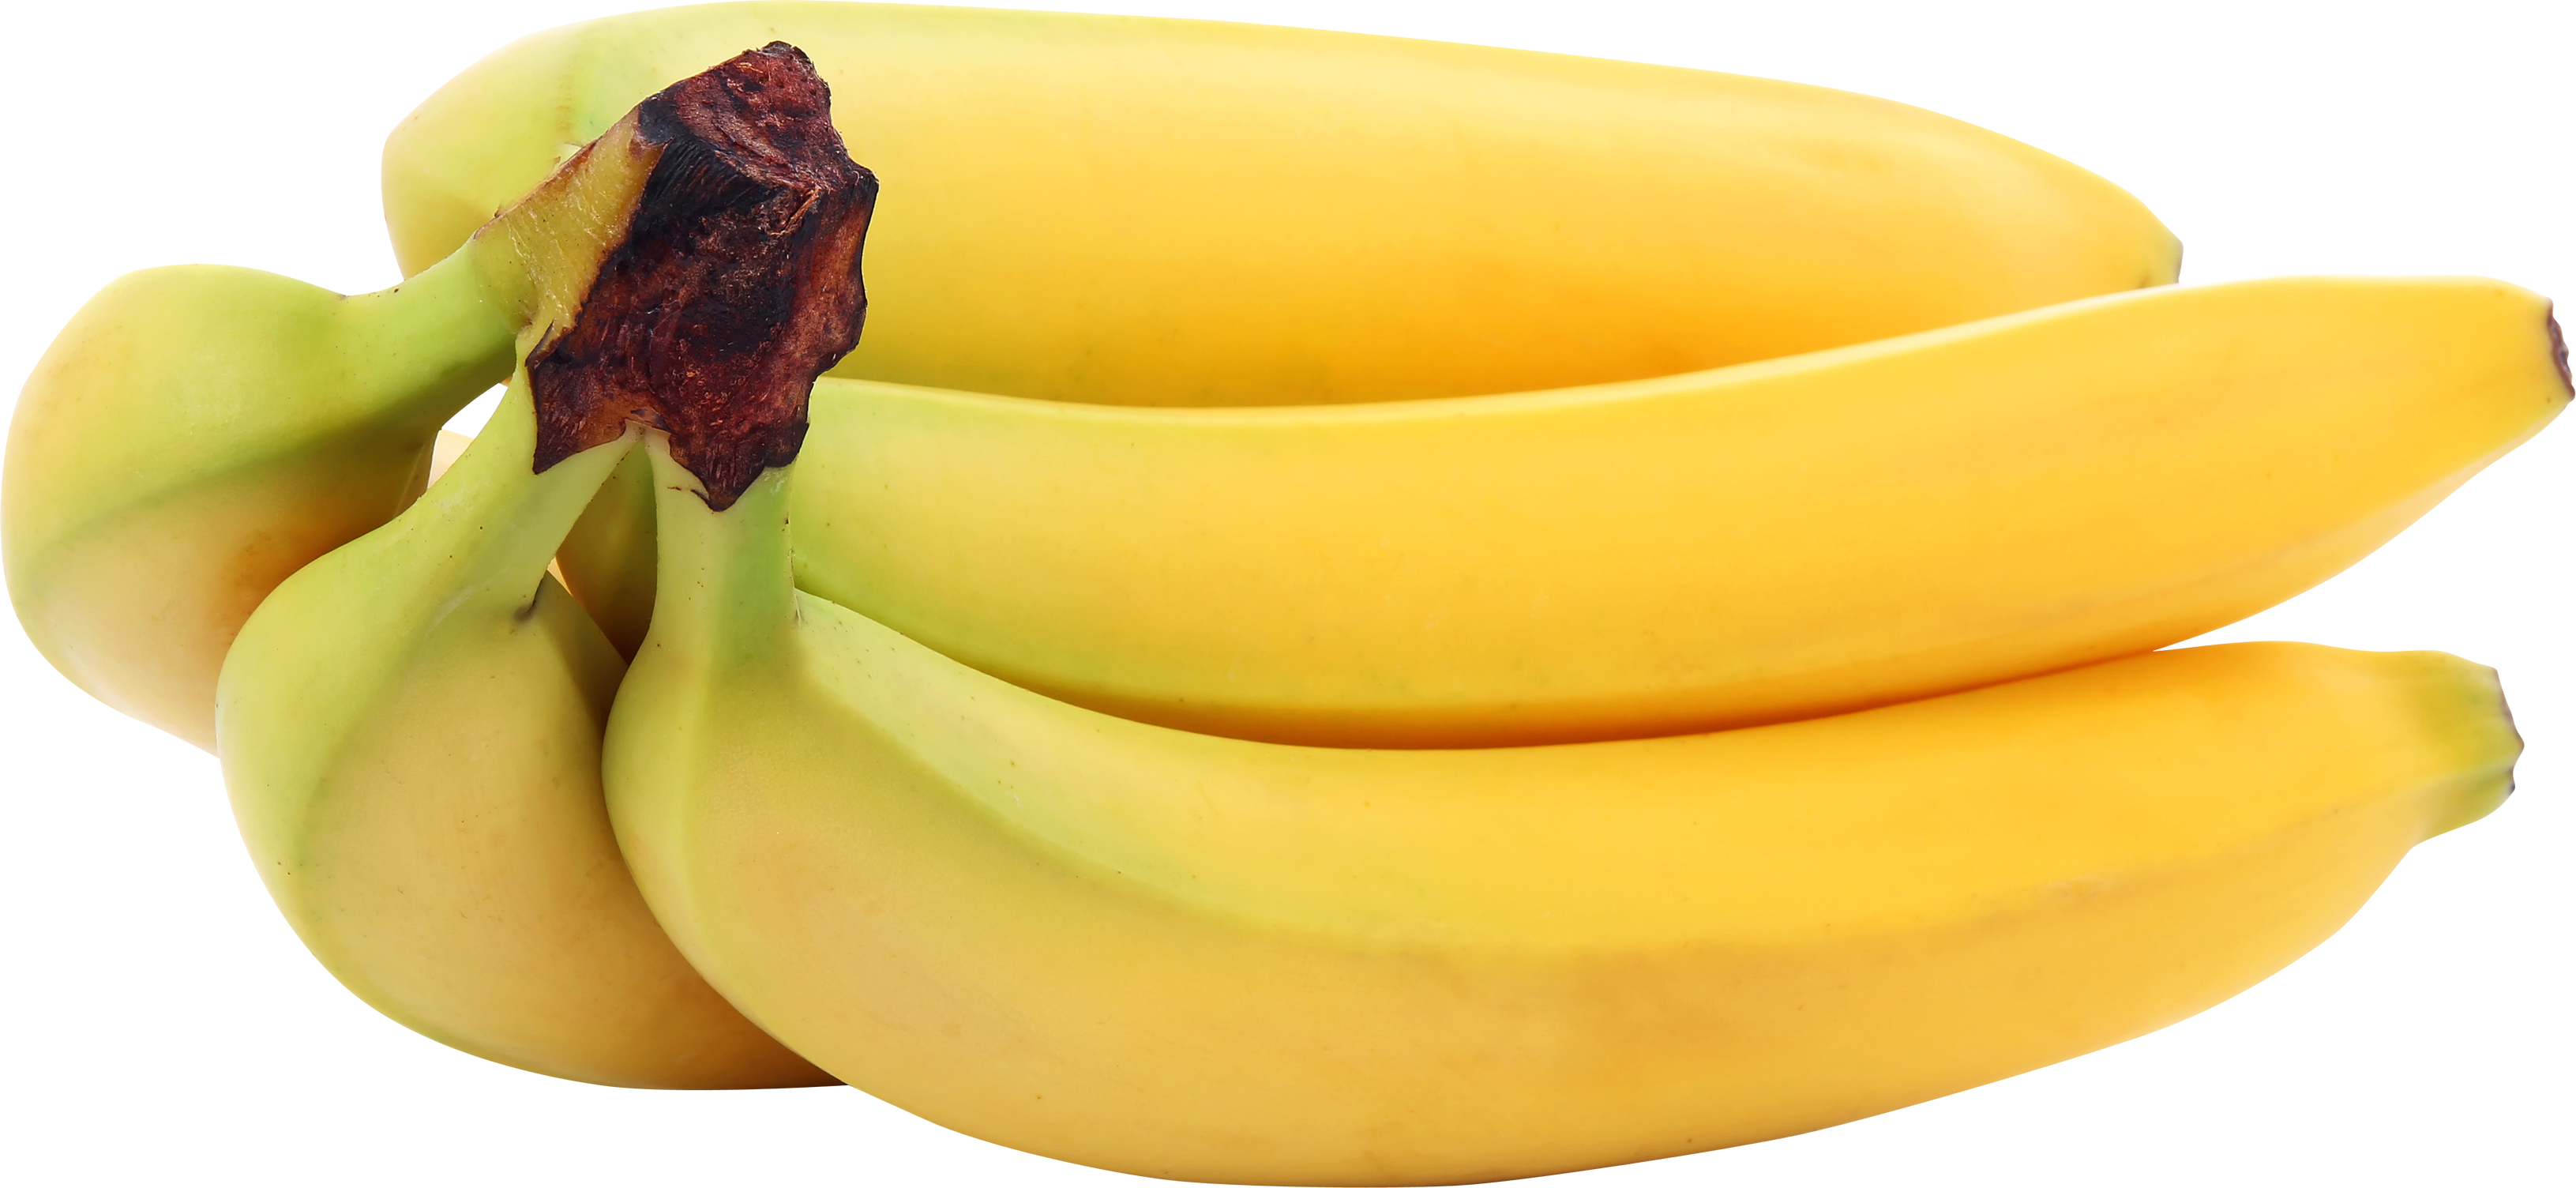 Yellow Bananas PNG Image